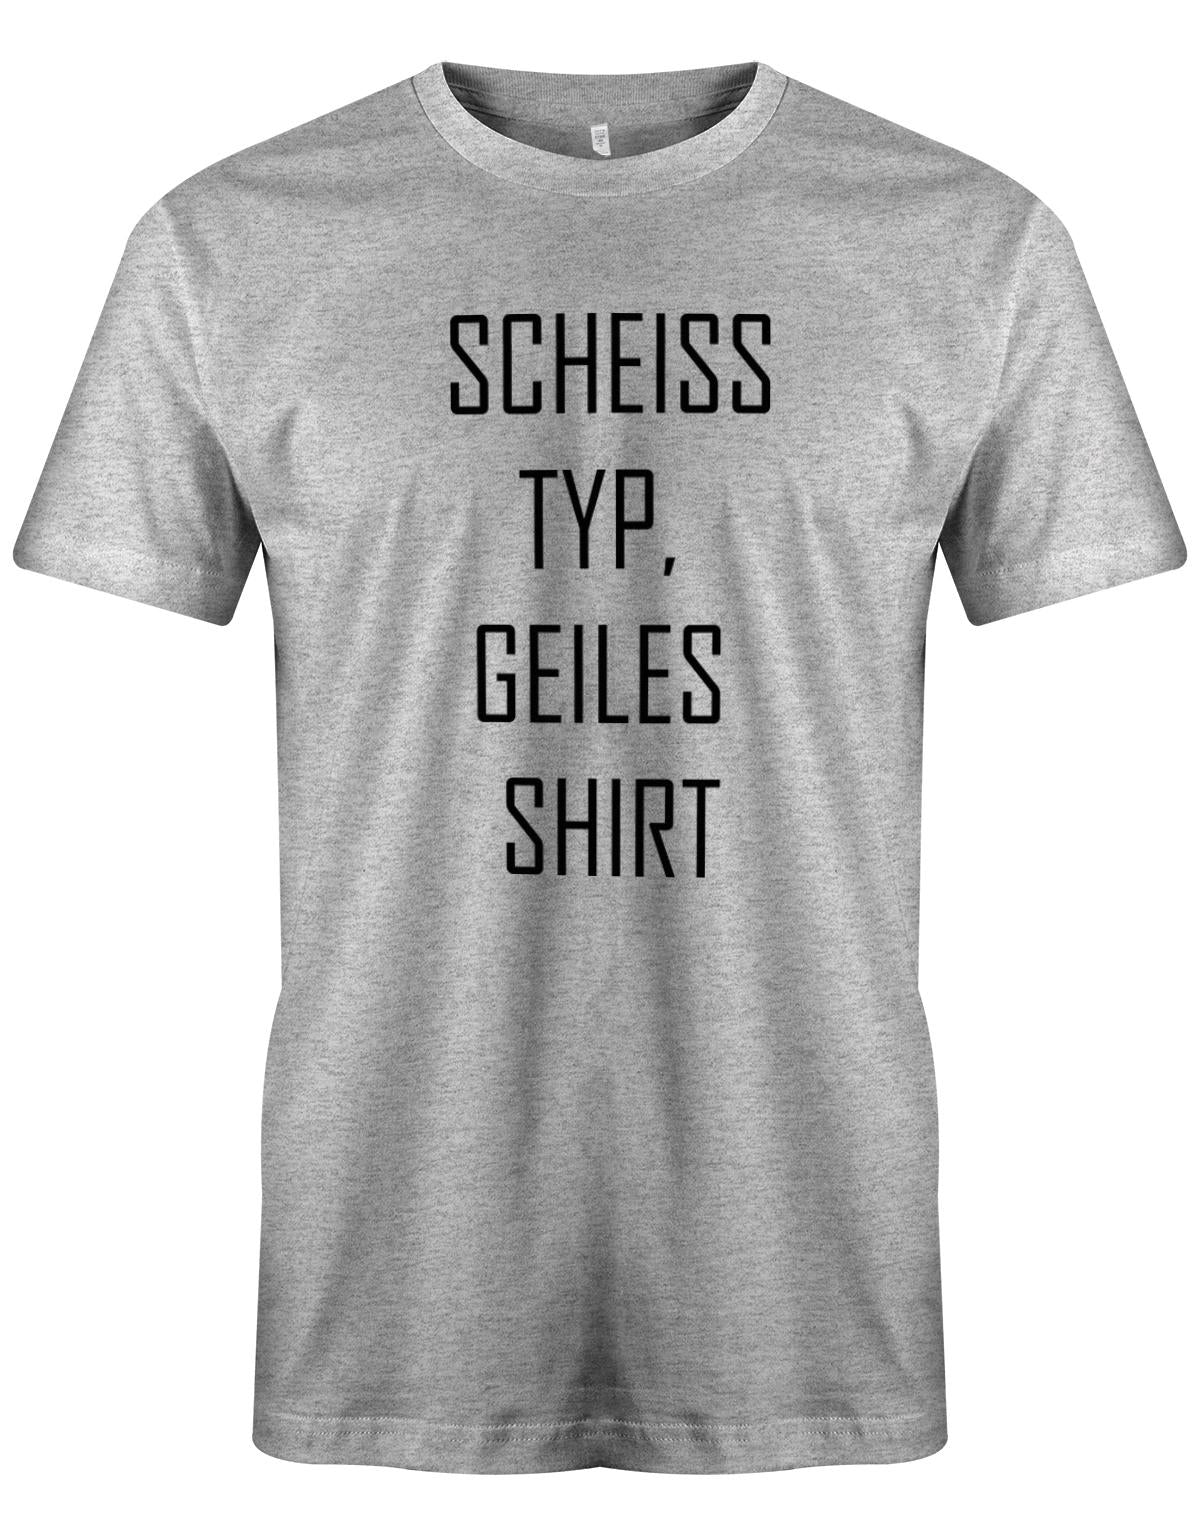 SCheiss-Typ-geiles-Shirt-Grau